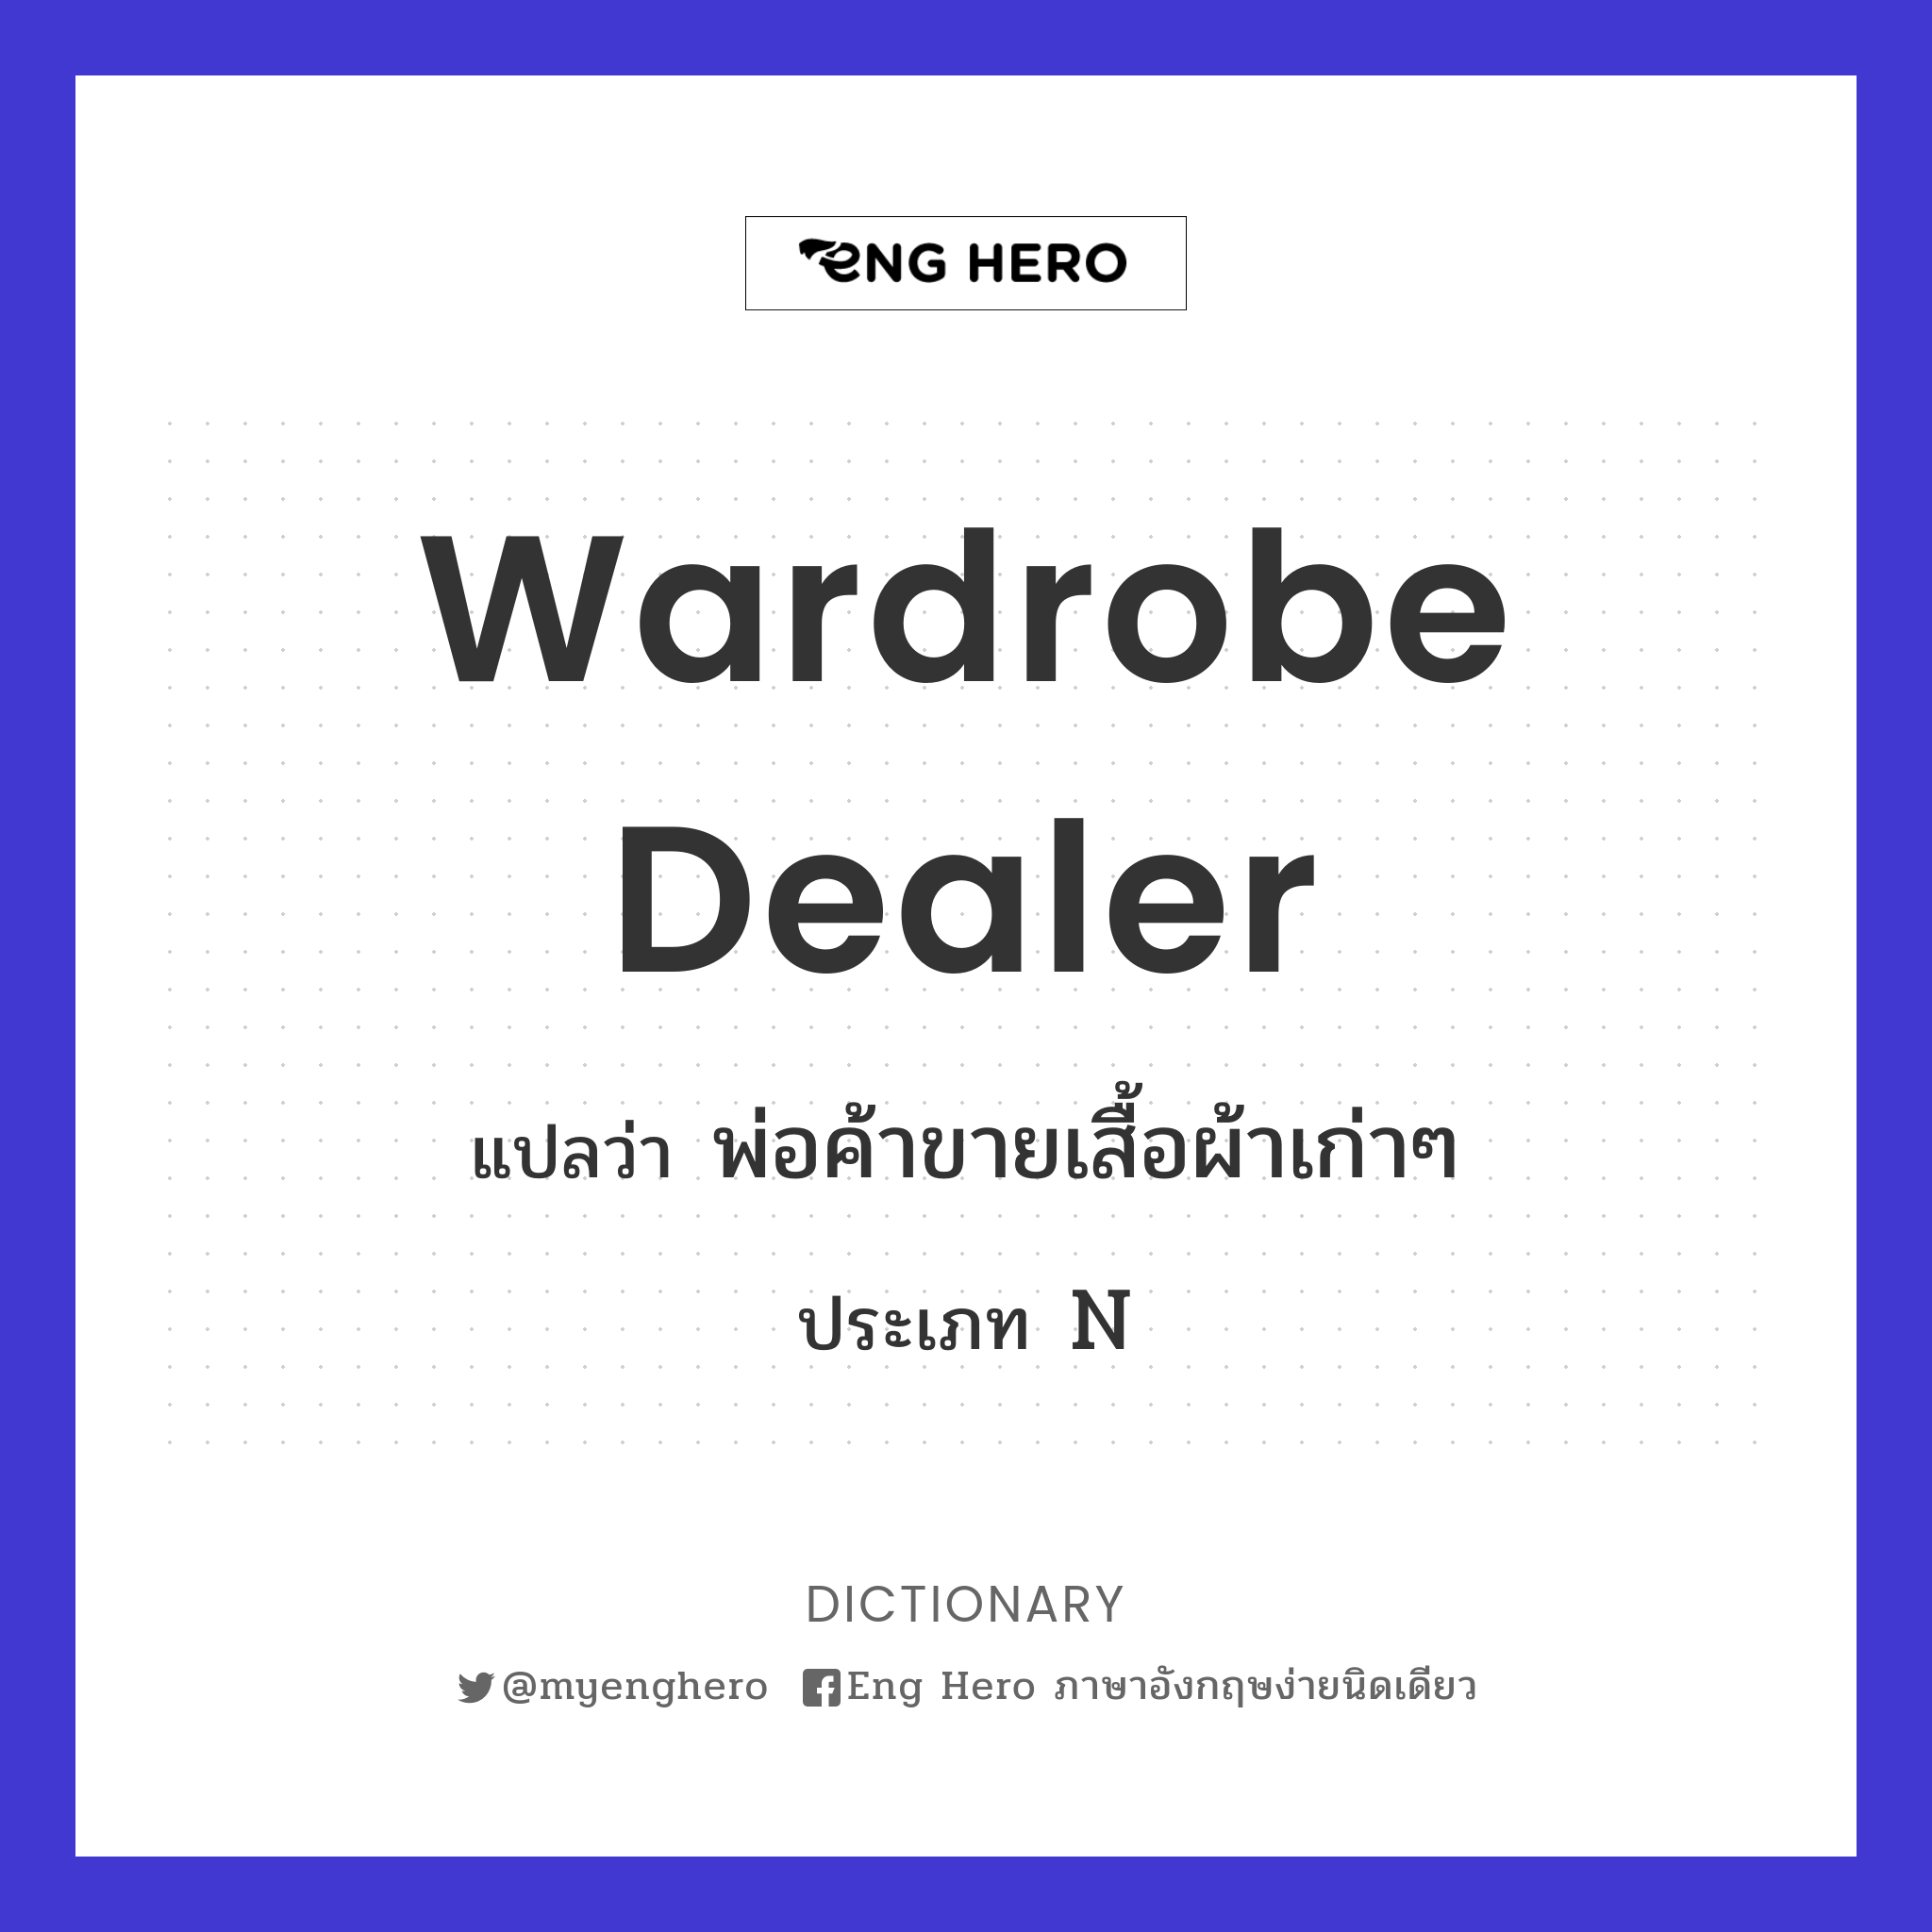 wardrobe dealer